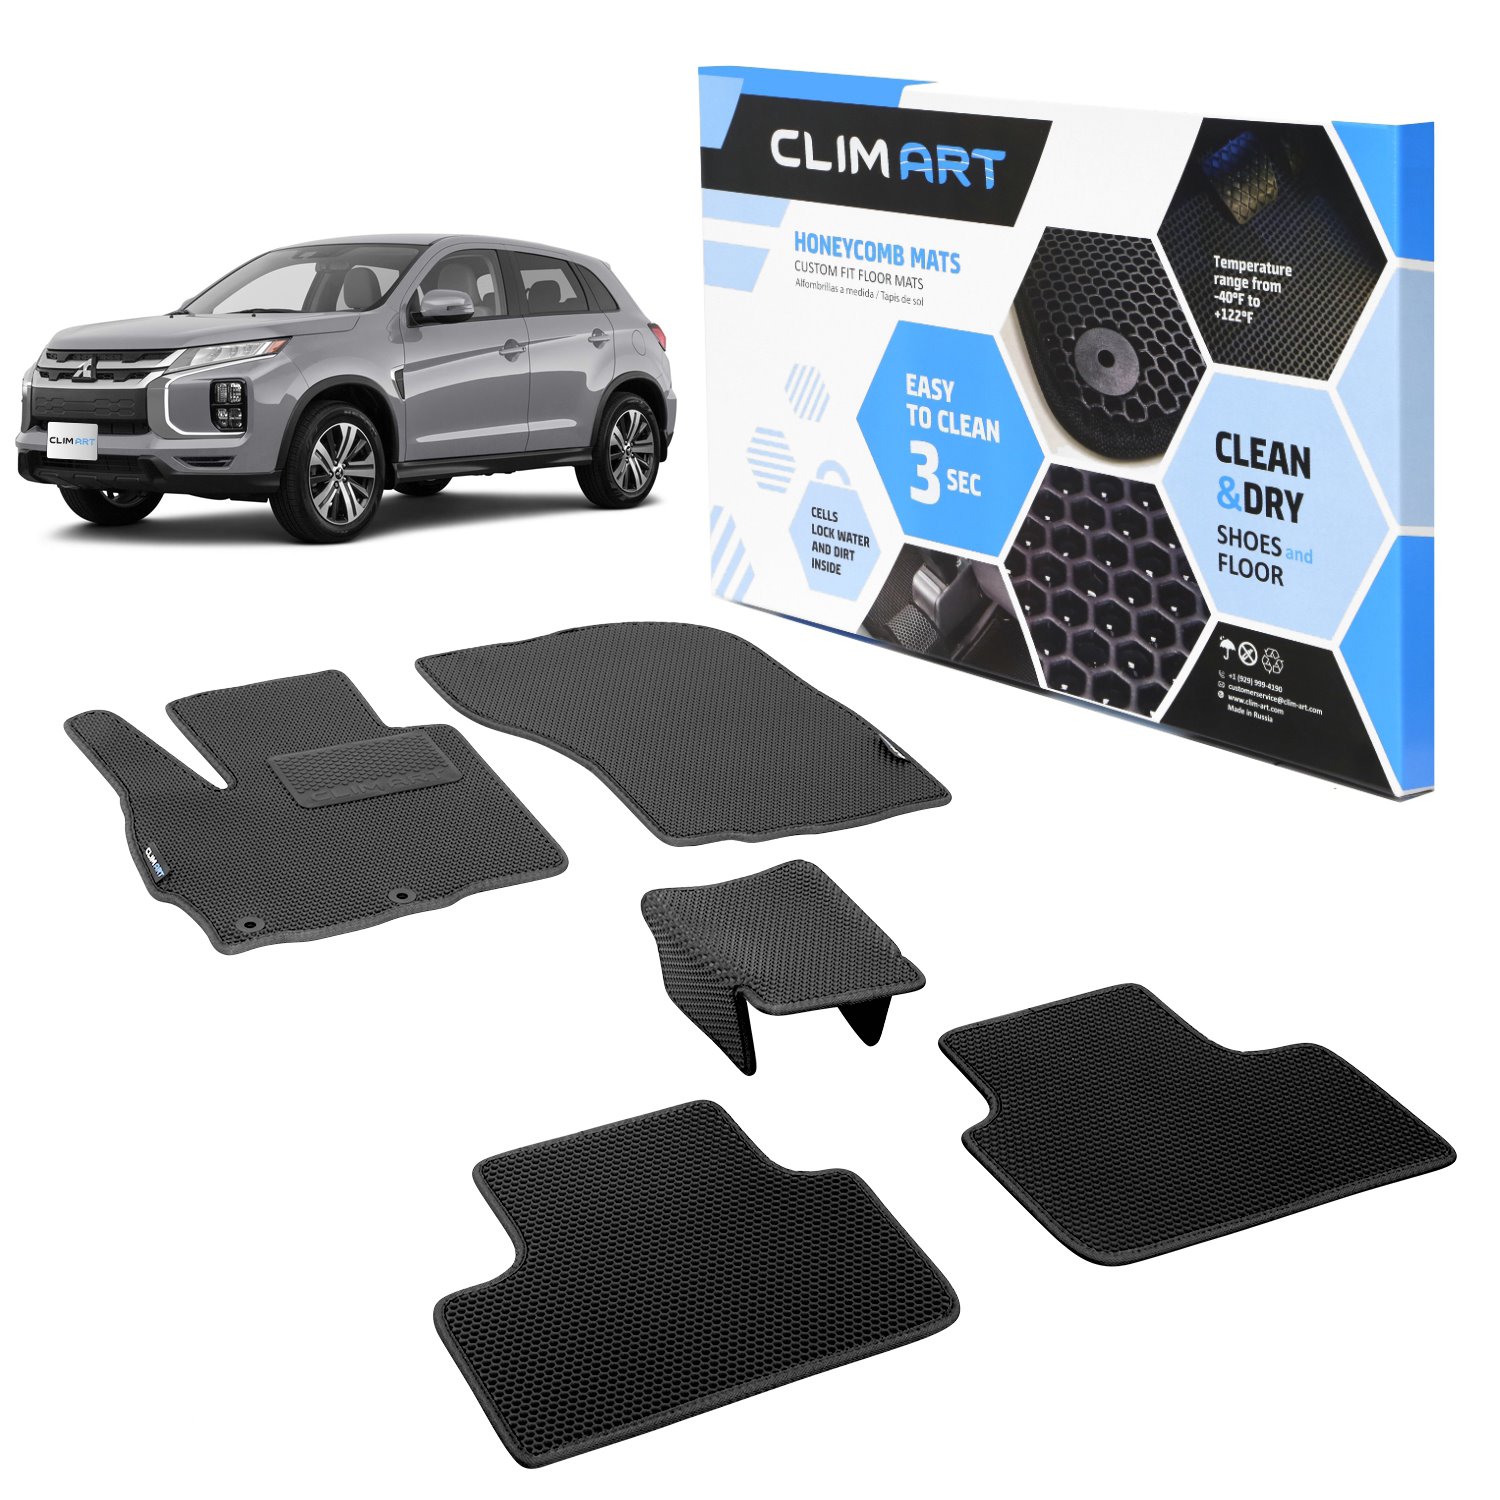 CLIM ART Honeycomb Custom Fit Floor Mats Fits Select Mitsubishi Outlander Sport